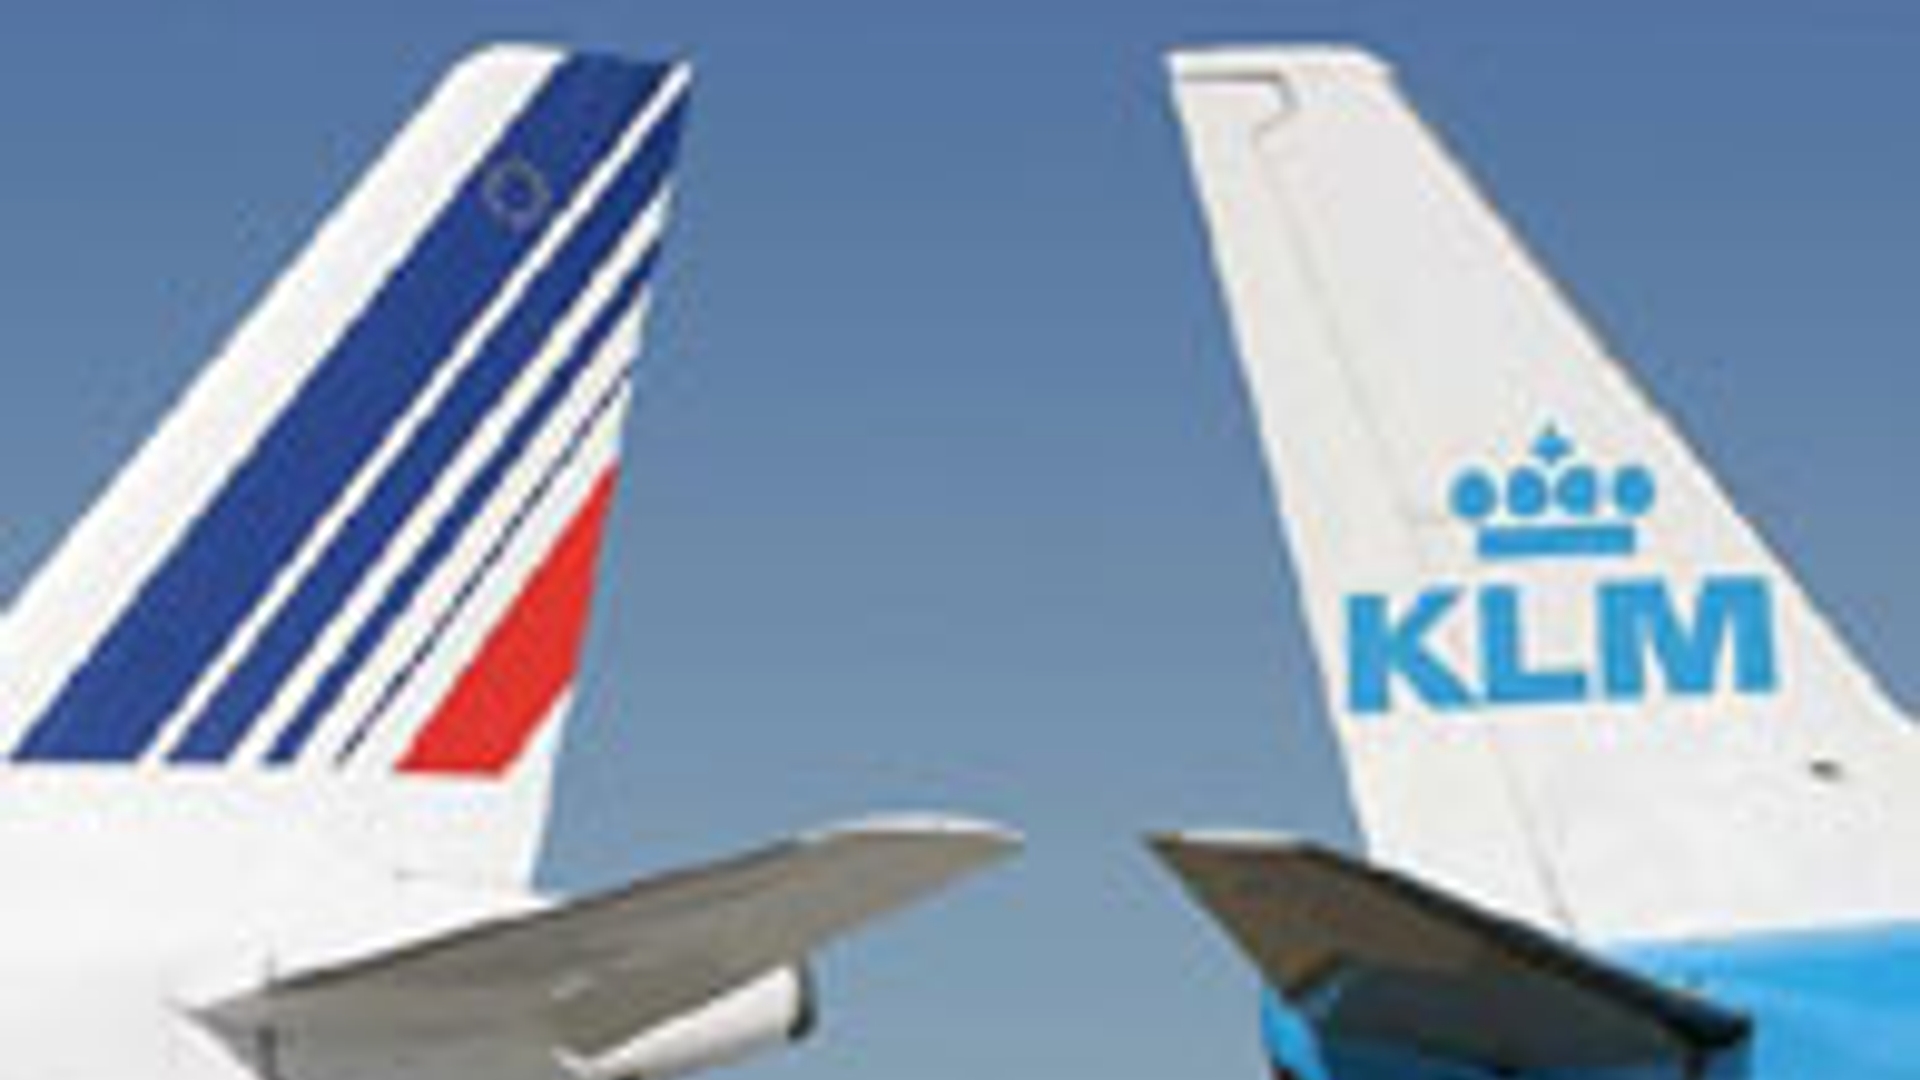 Air_France_KLM_10.jpg